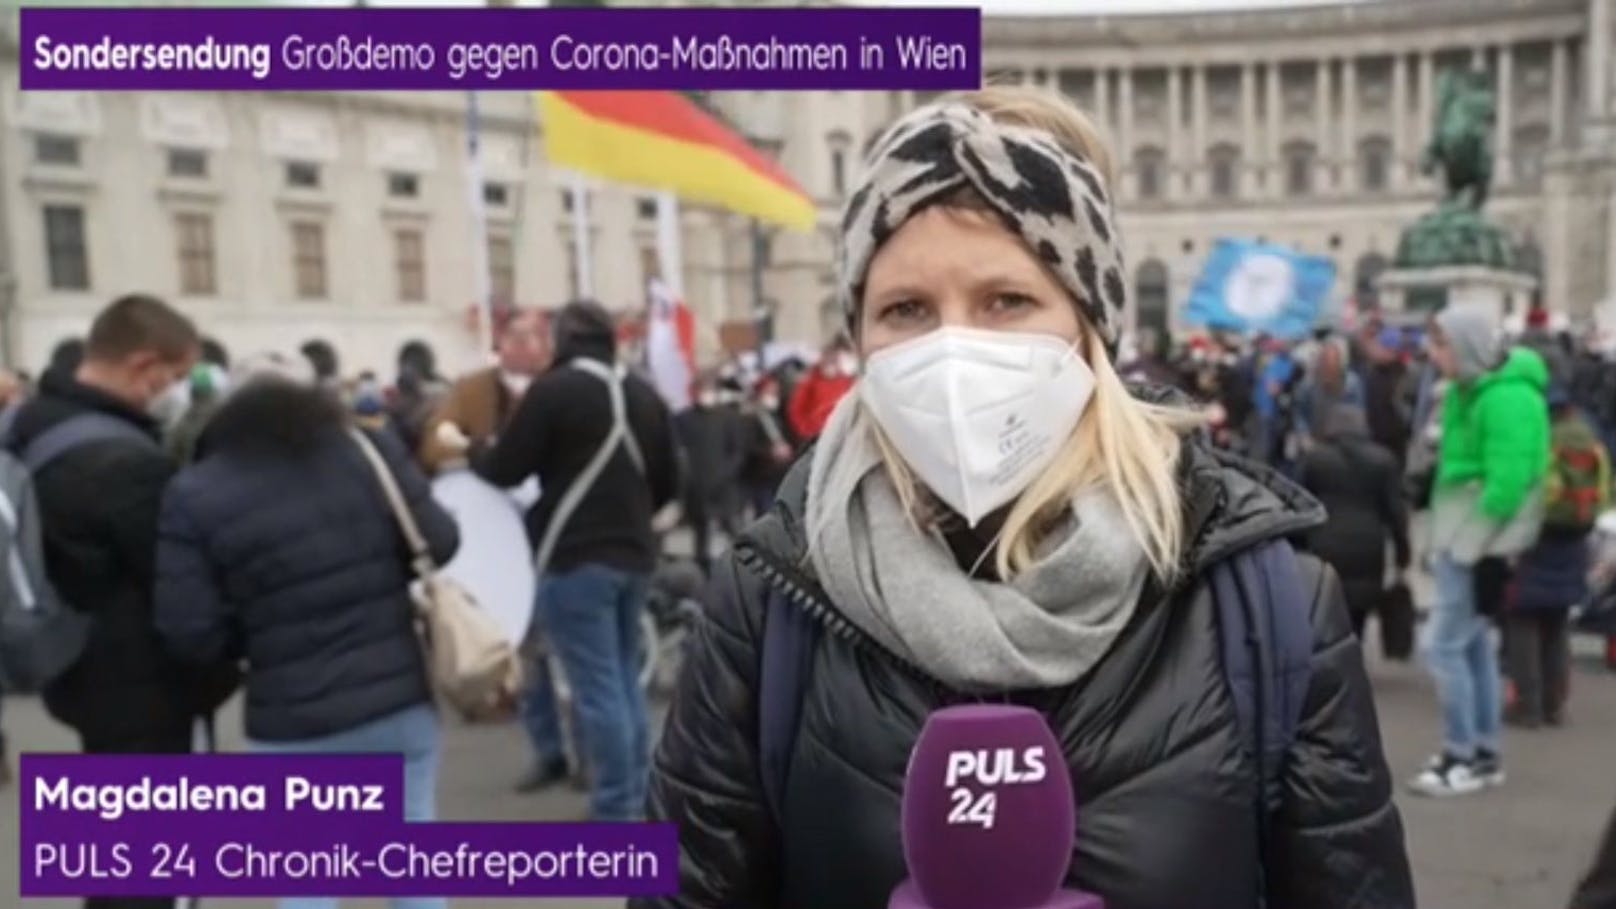 Chef-Reporterin Magdalena Punz berichtet live vor Ort – in Begleitung von Sicherheitsmännern.